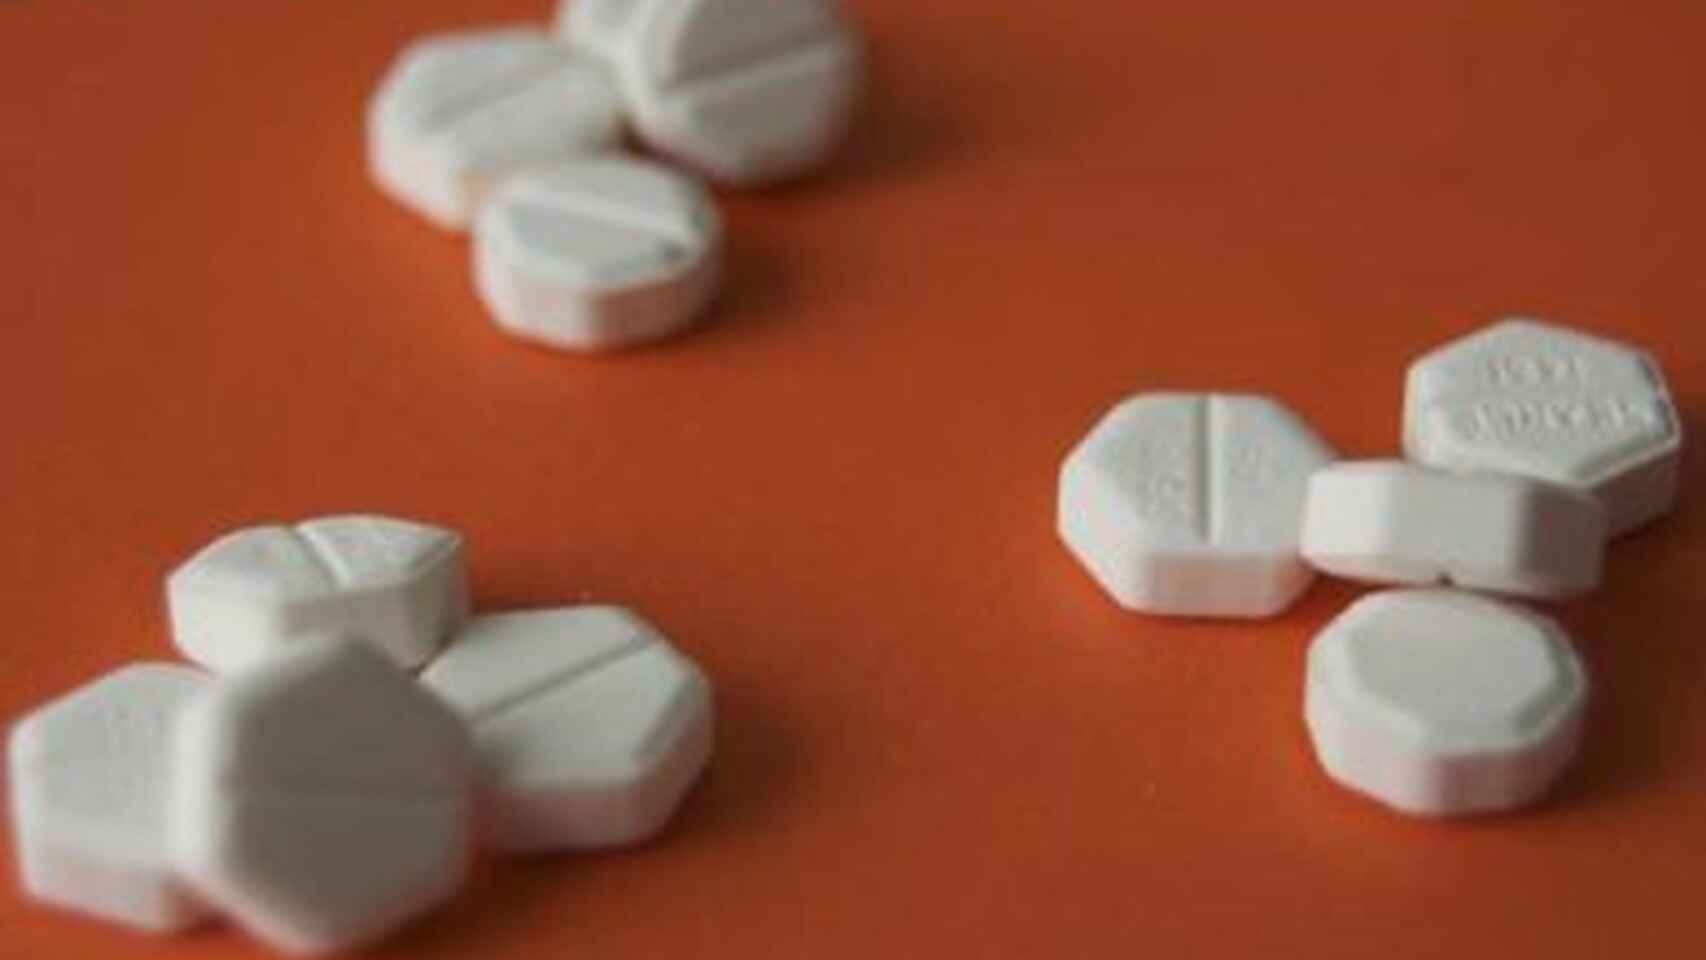 FDA evalúa posibilidad de recibir píldoras abortivas por correo